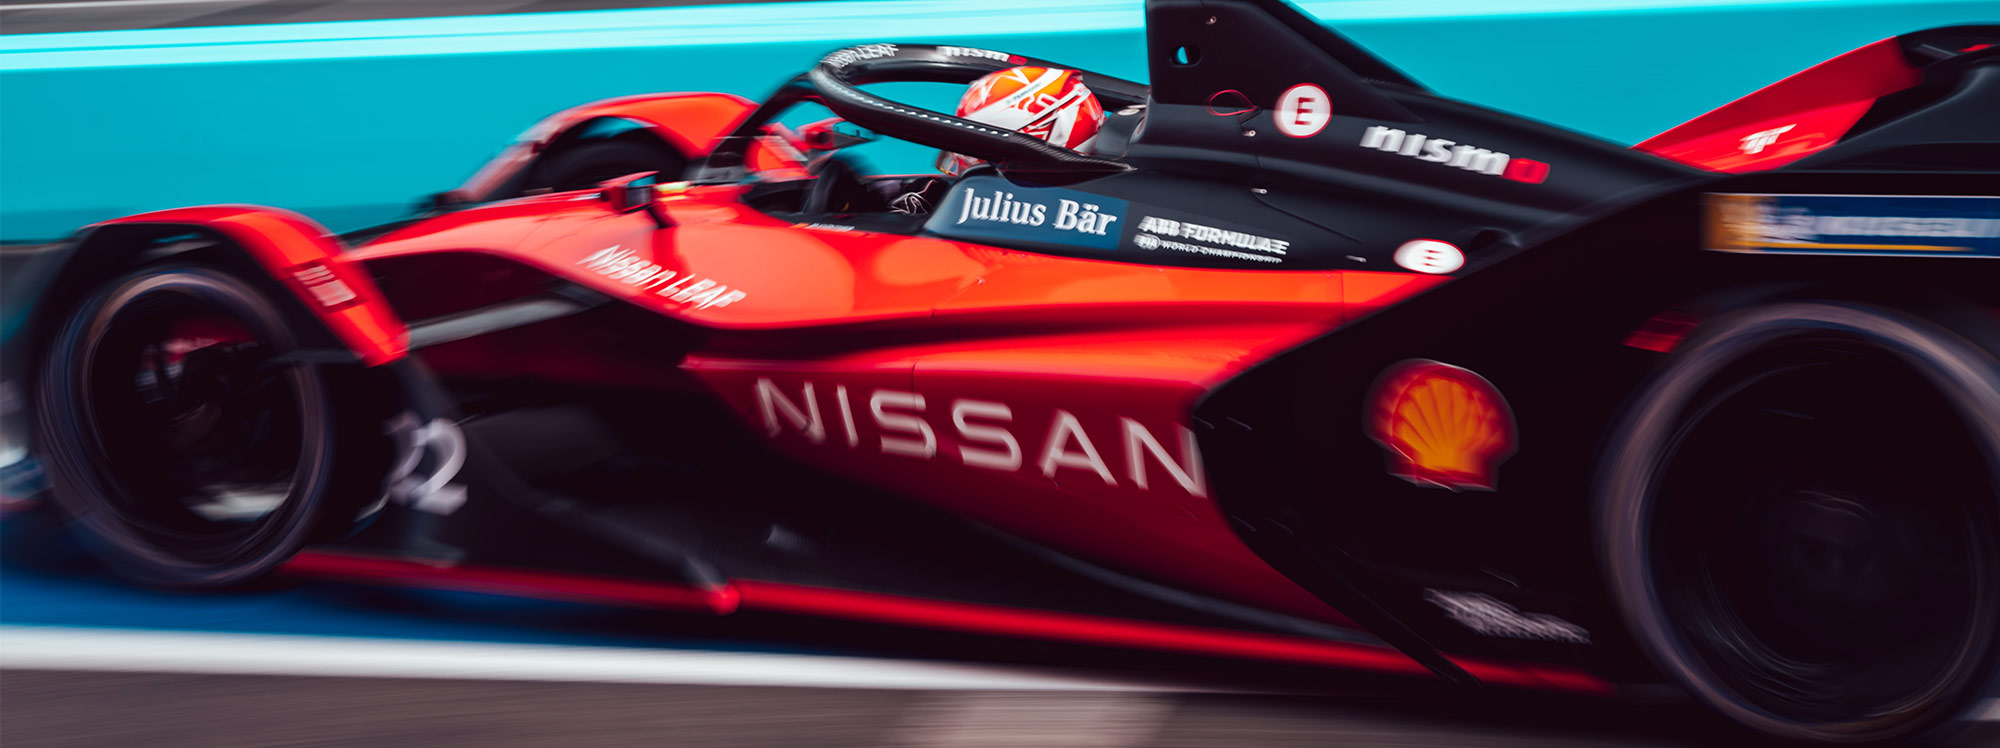 El equipo Nissan e.dams en la clásica doble carrera de Fórmula E